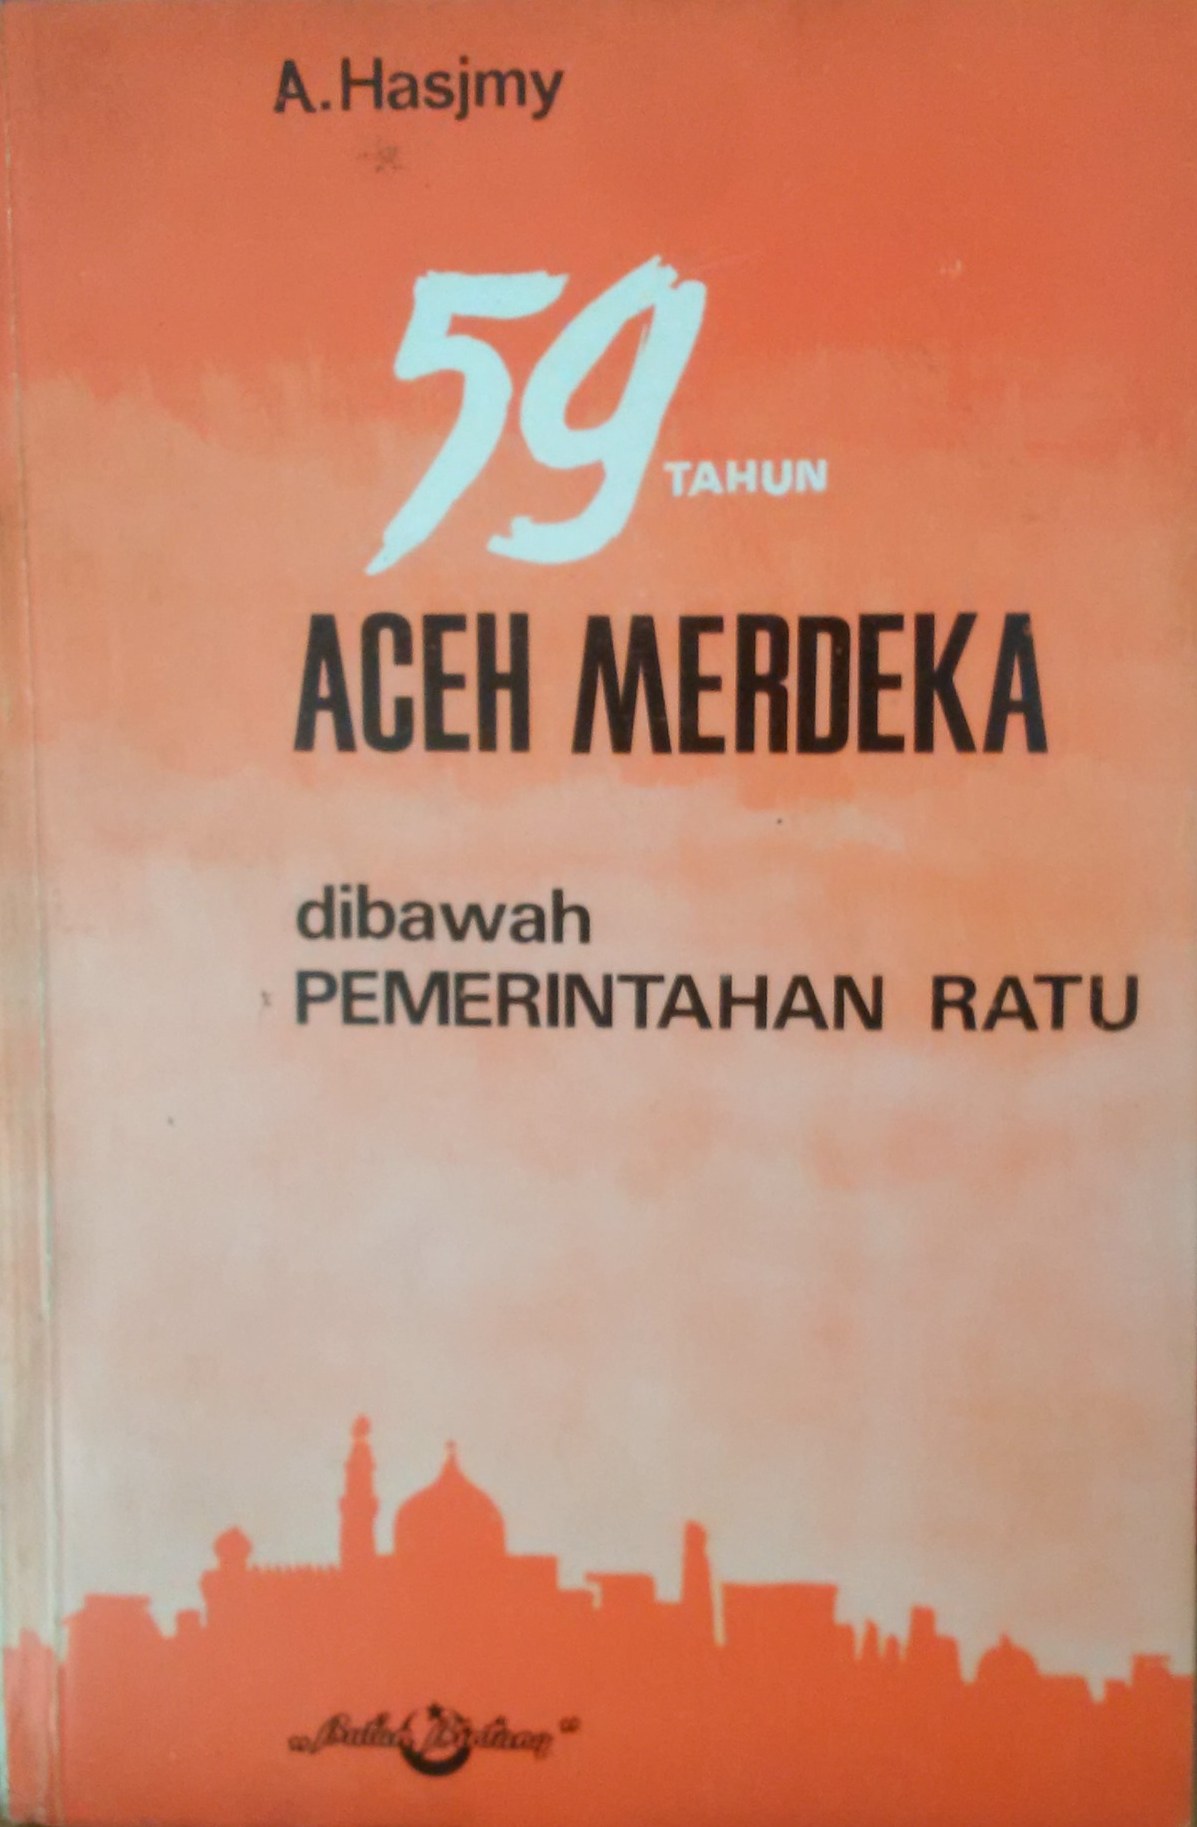 59 Tahun Aceh Merdeka Di Bawah Pemerintahan Ratu.jpg